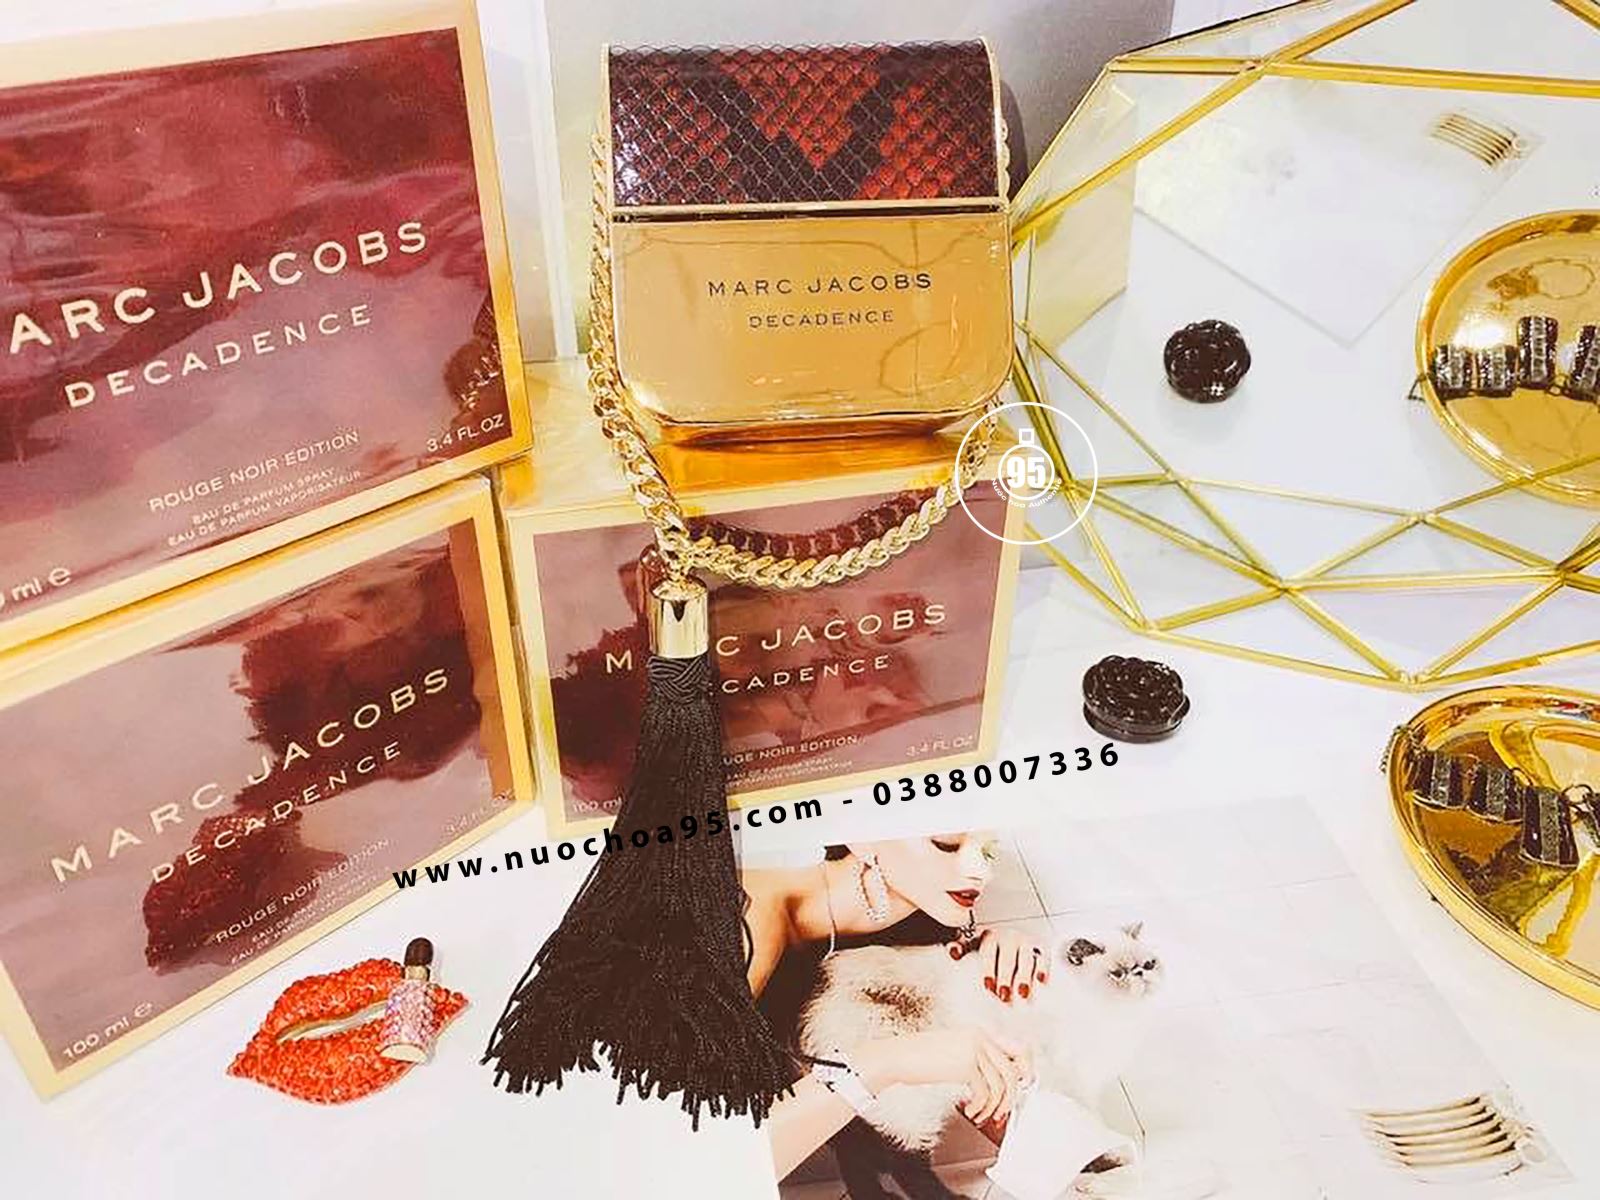 Nước hoa Marc Jacobs Decadence Rouge Noir Edition - Ảnh 1